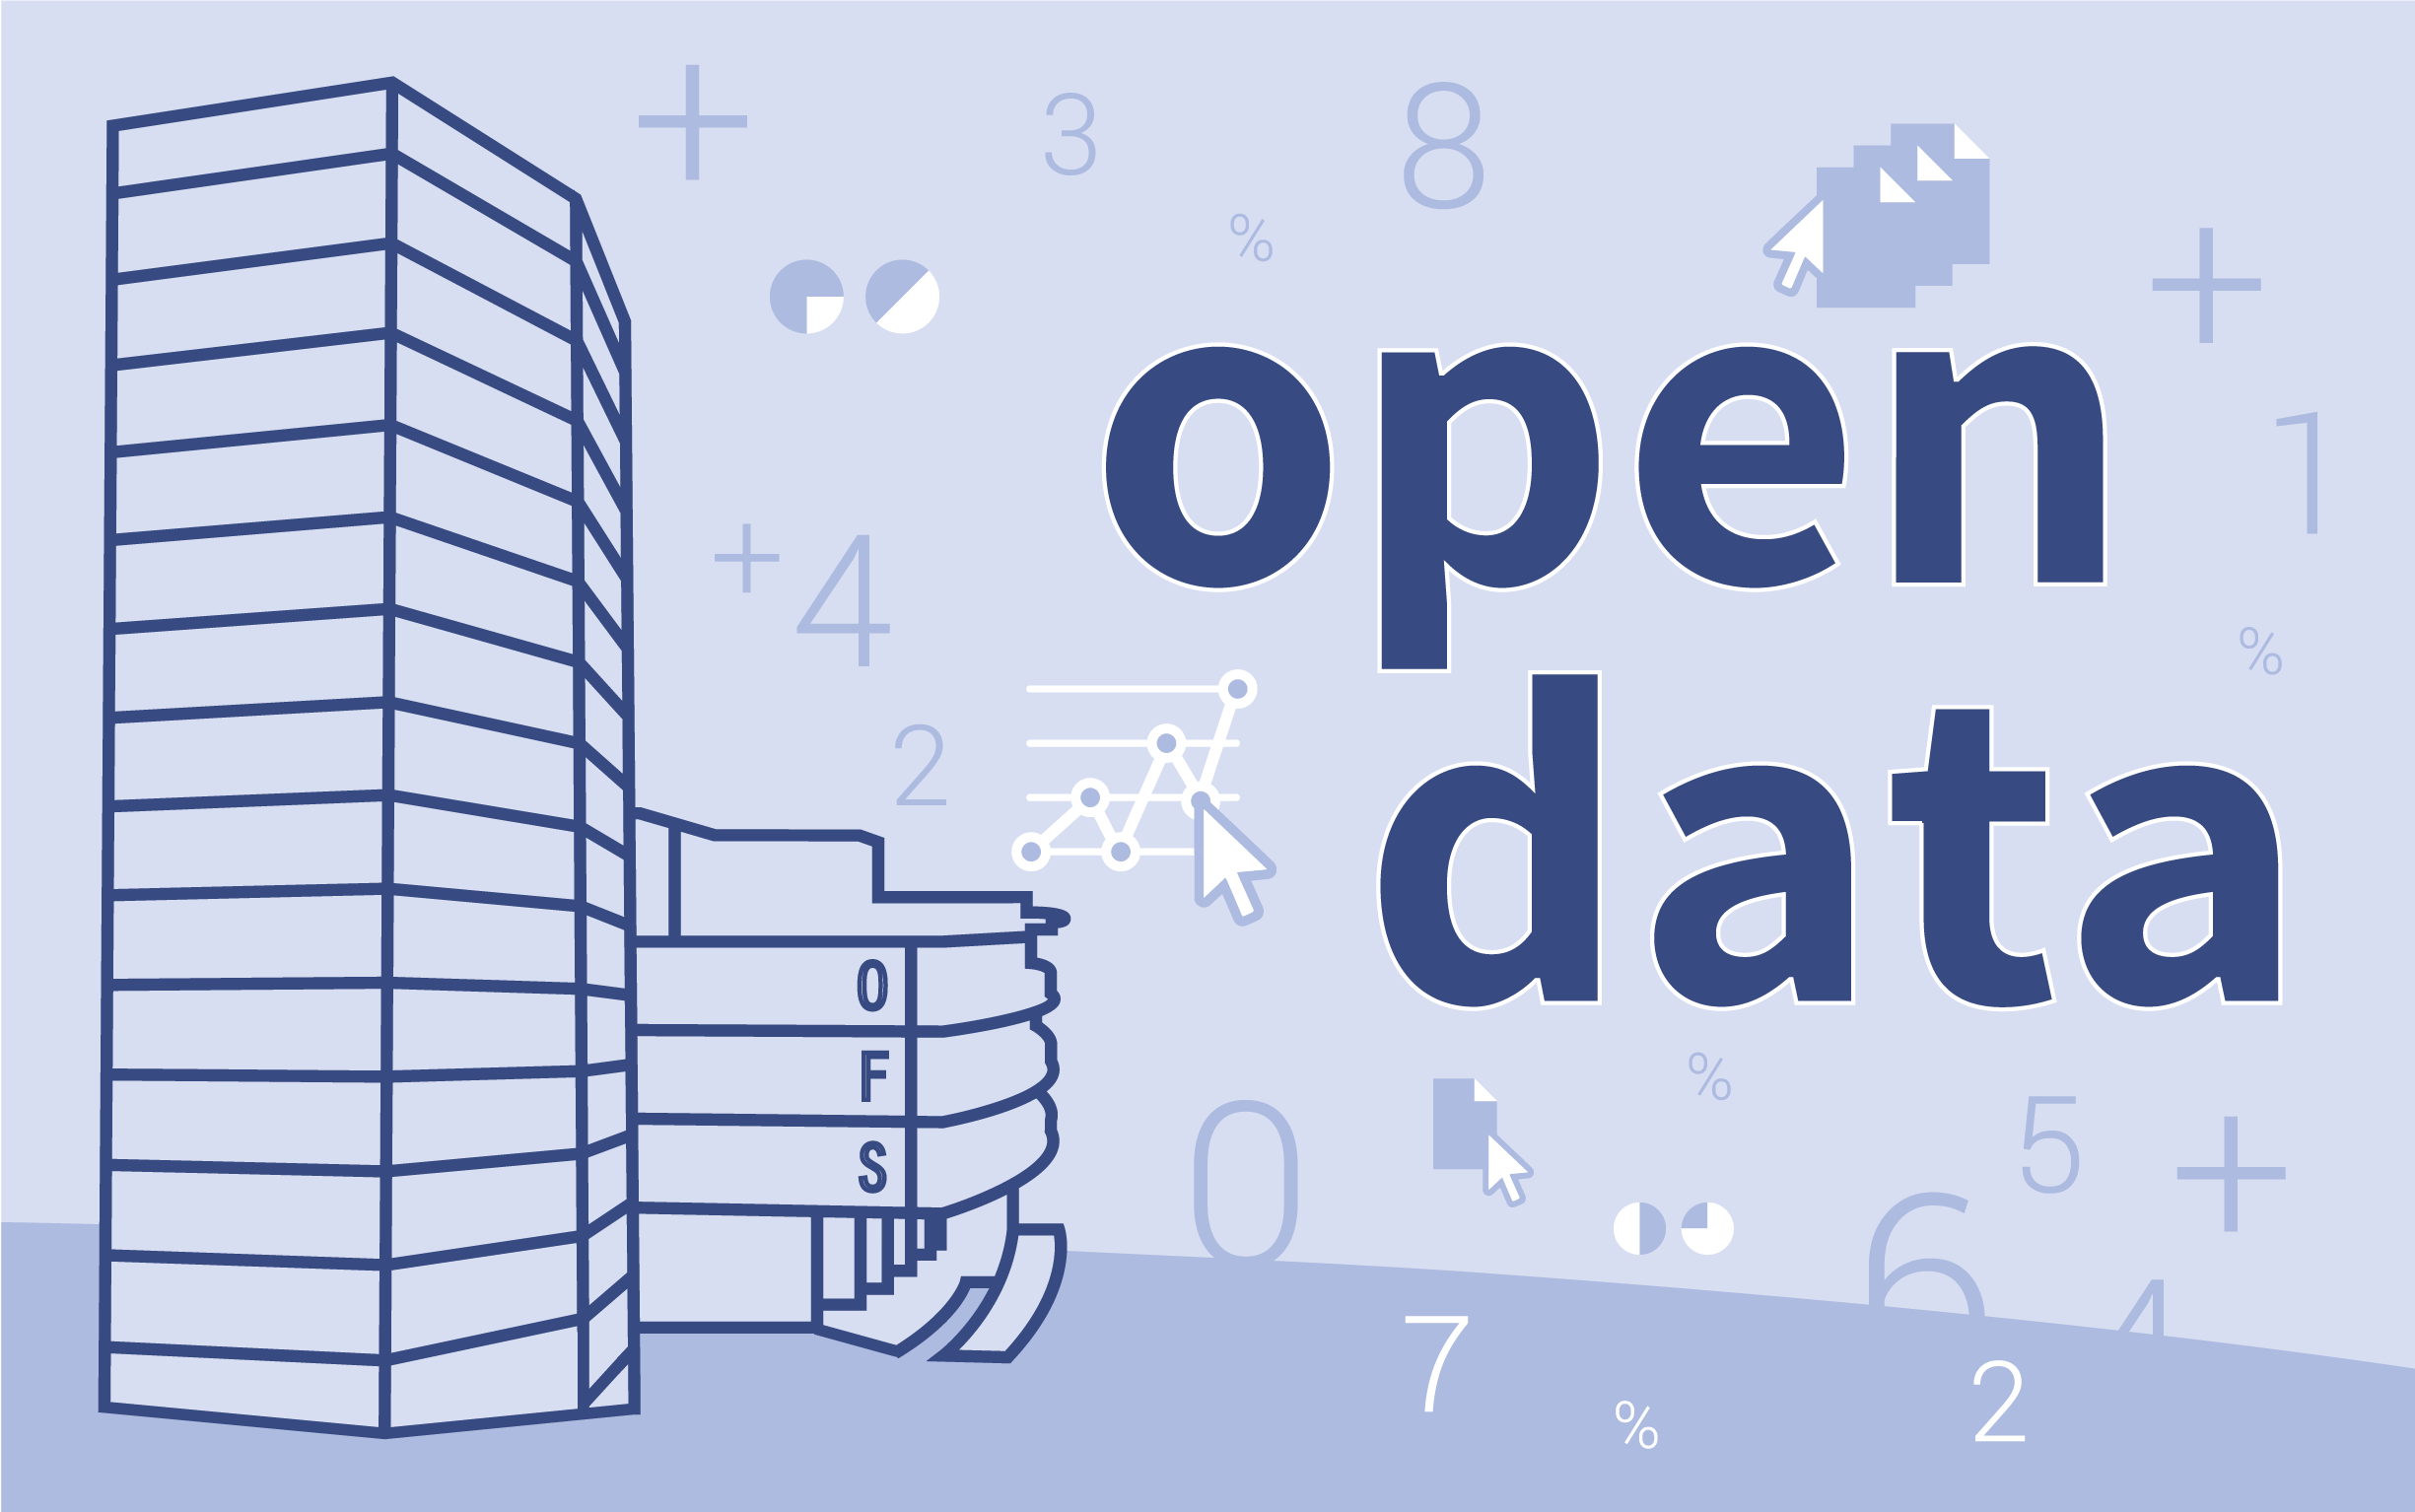 Questa immagine conduce alle informazioni più dettagliati su: Lettere informative della Segreteria Open Government Data